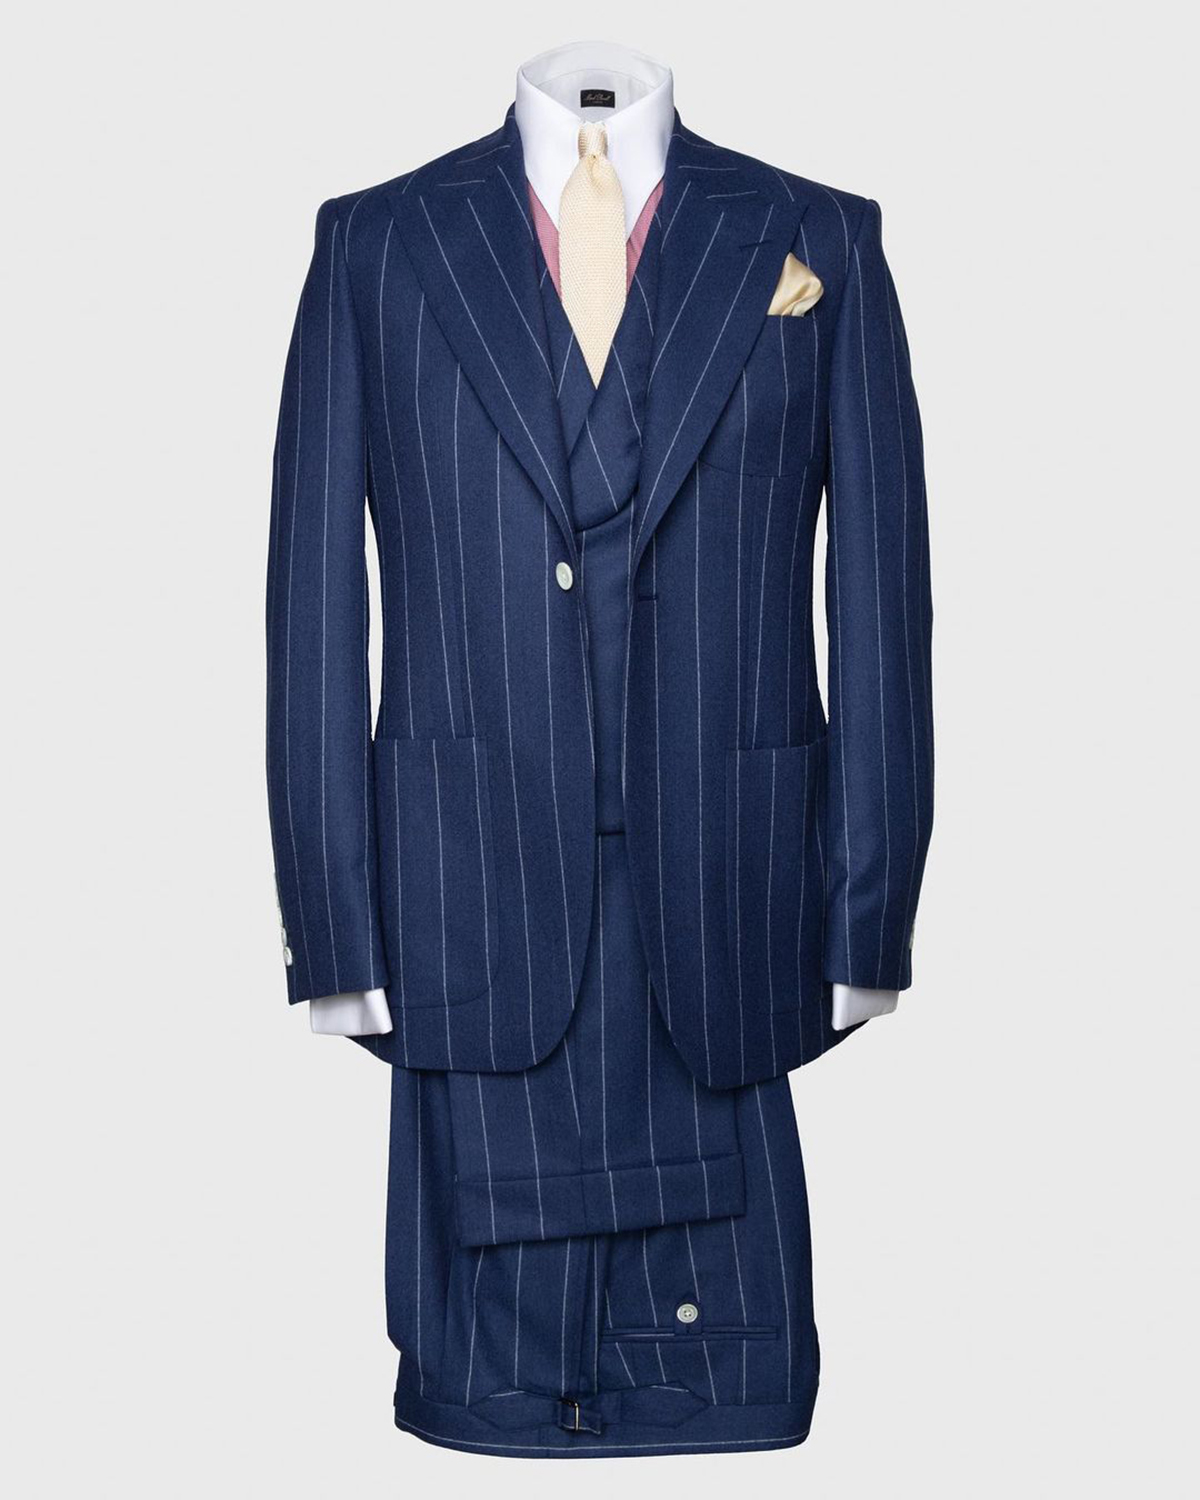 Yeni stil erkekler düğün damat smokin zirve yaka tek göğüslü damat takım elbise moda tasarımcısı 3 adet blazers yelek pantolon takım elbise smokin özelleştirilmiş